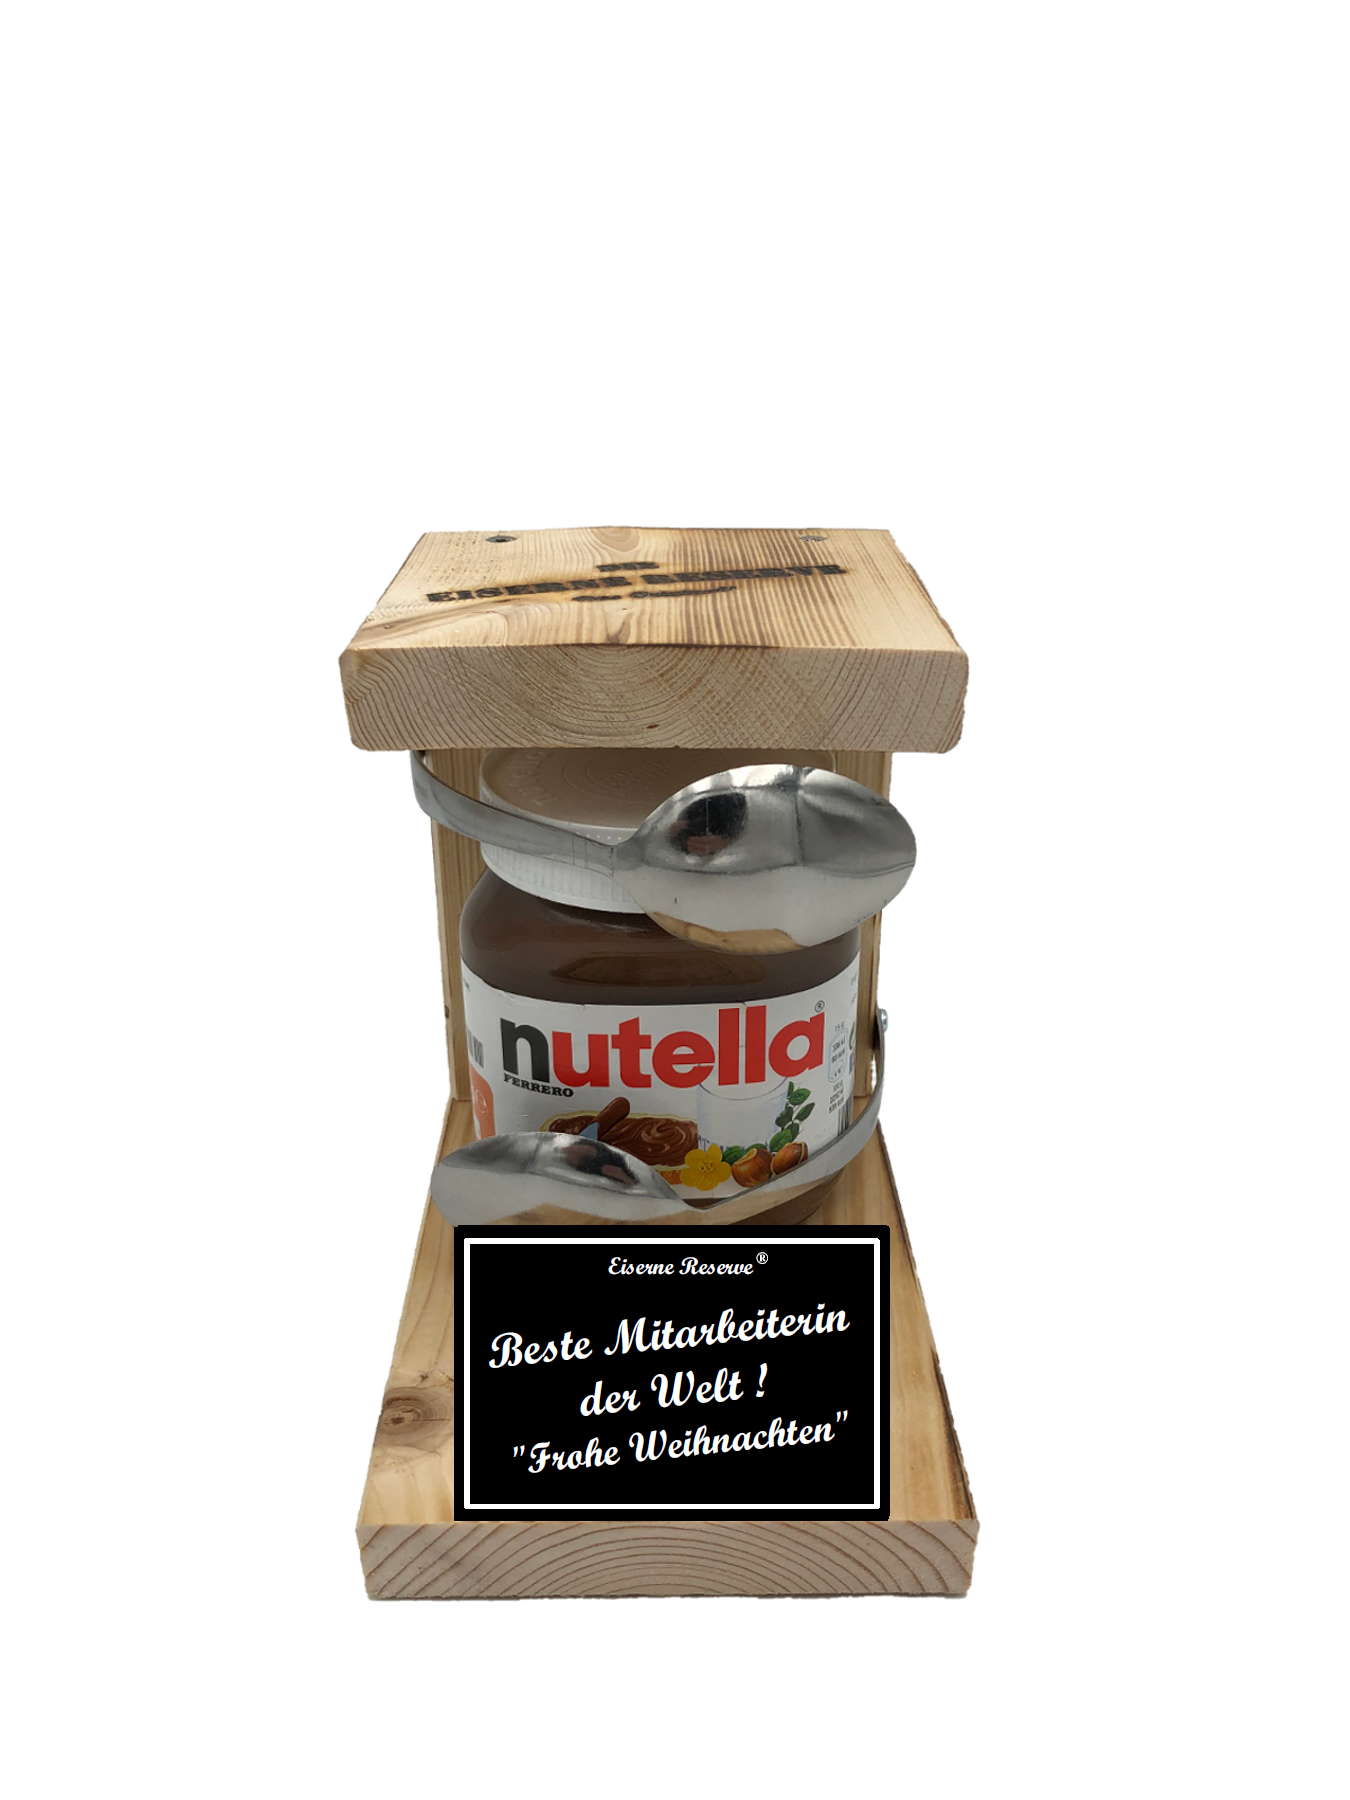 Beste Mitarbeiterin der Welt Frohe Weihnachten Löffel Nutella Geschenk - Die Nutella Geschenkidee